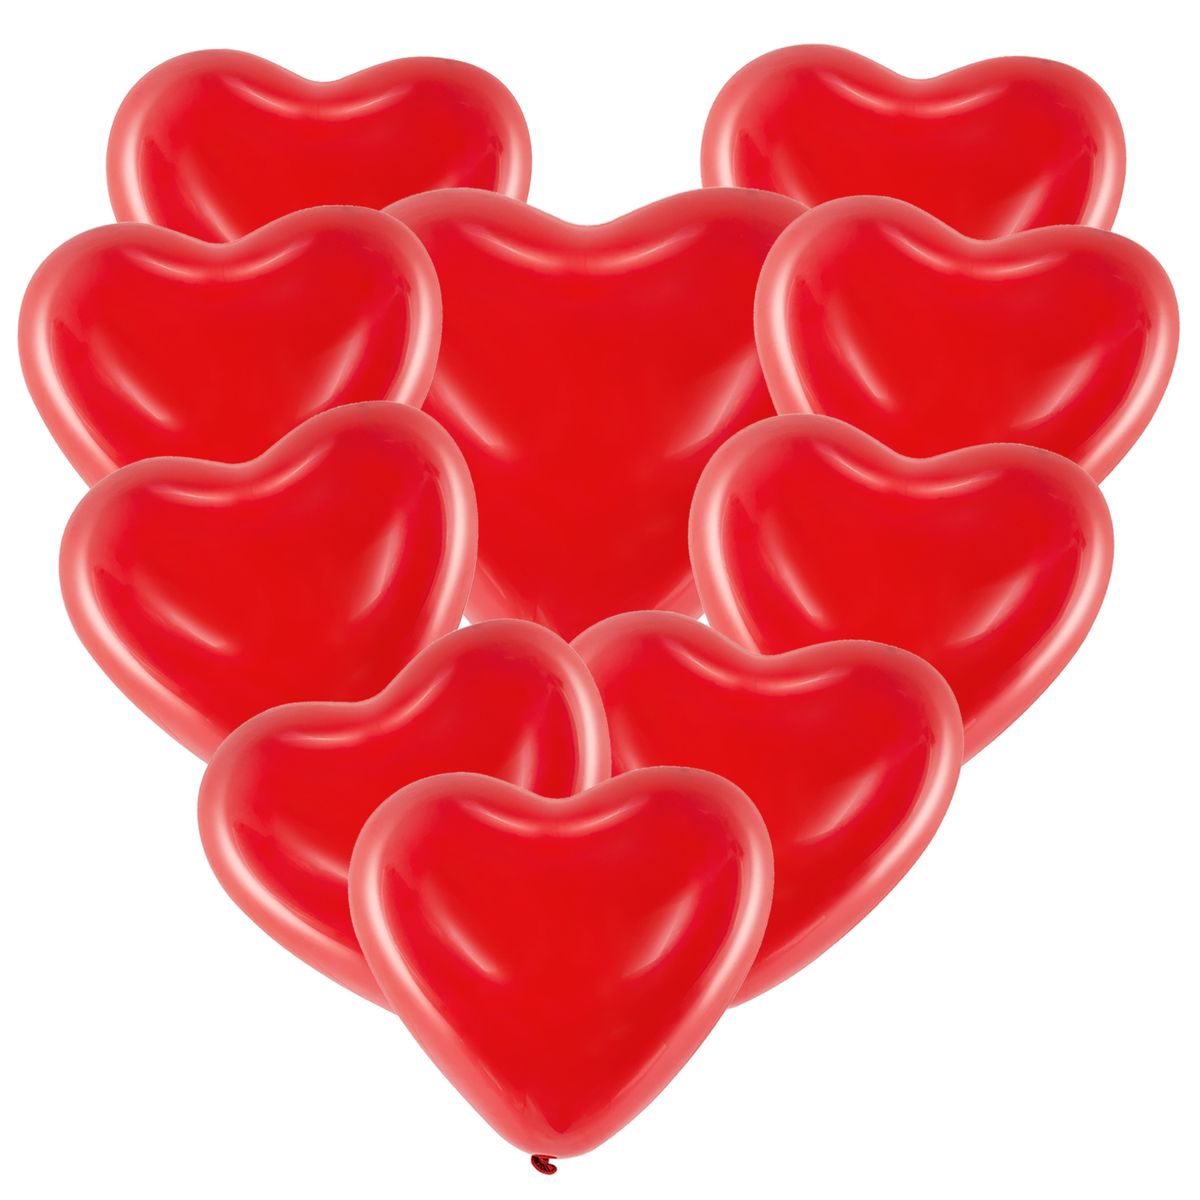 Herz Luftballons rot Ø 40,6 cm 10 Stück Ballon Hochzeit Verlobung  Valentinstag